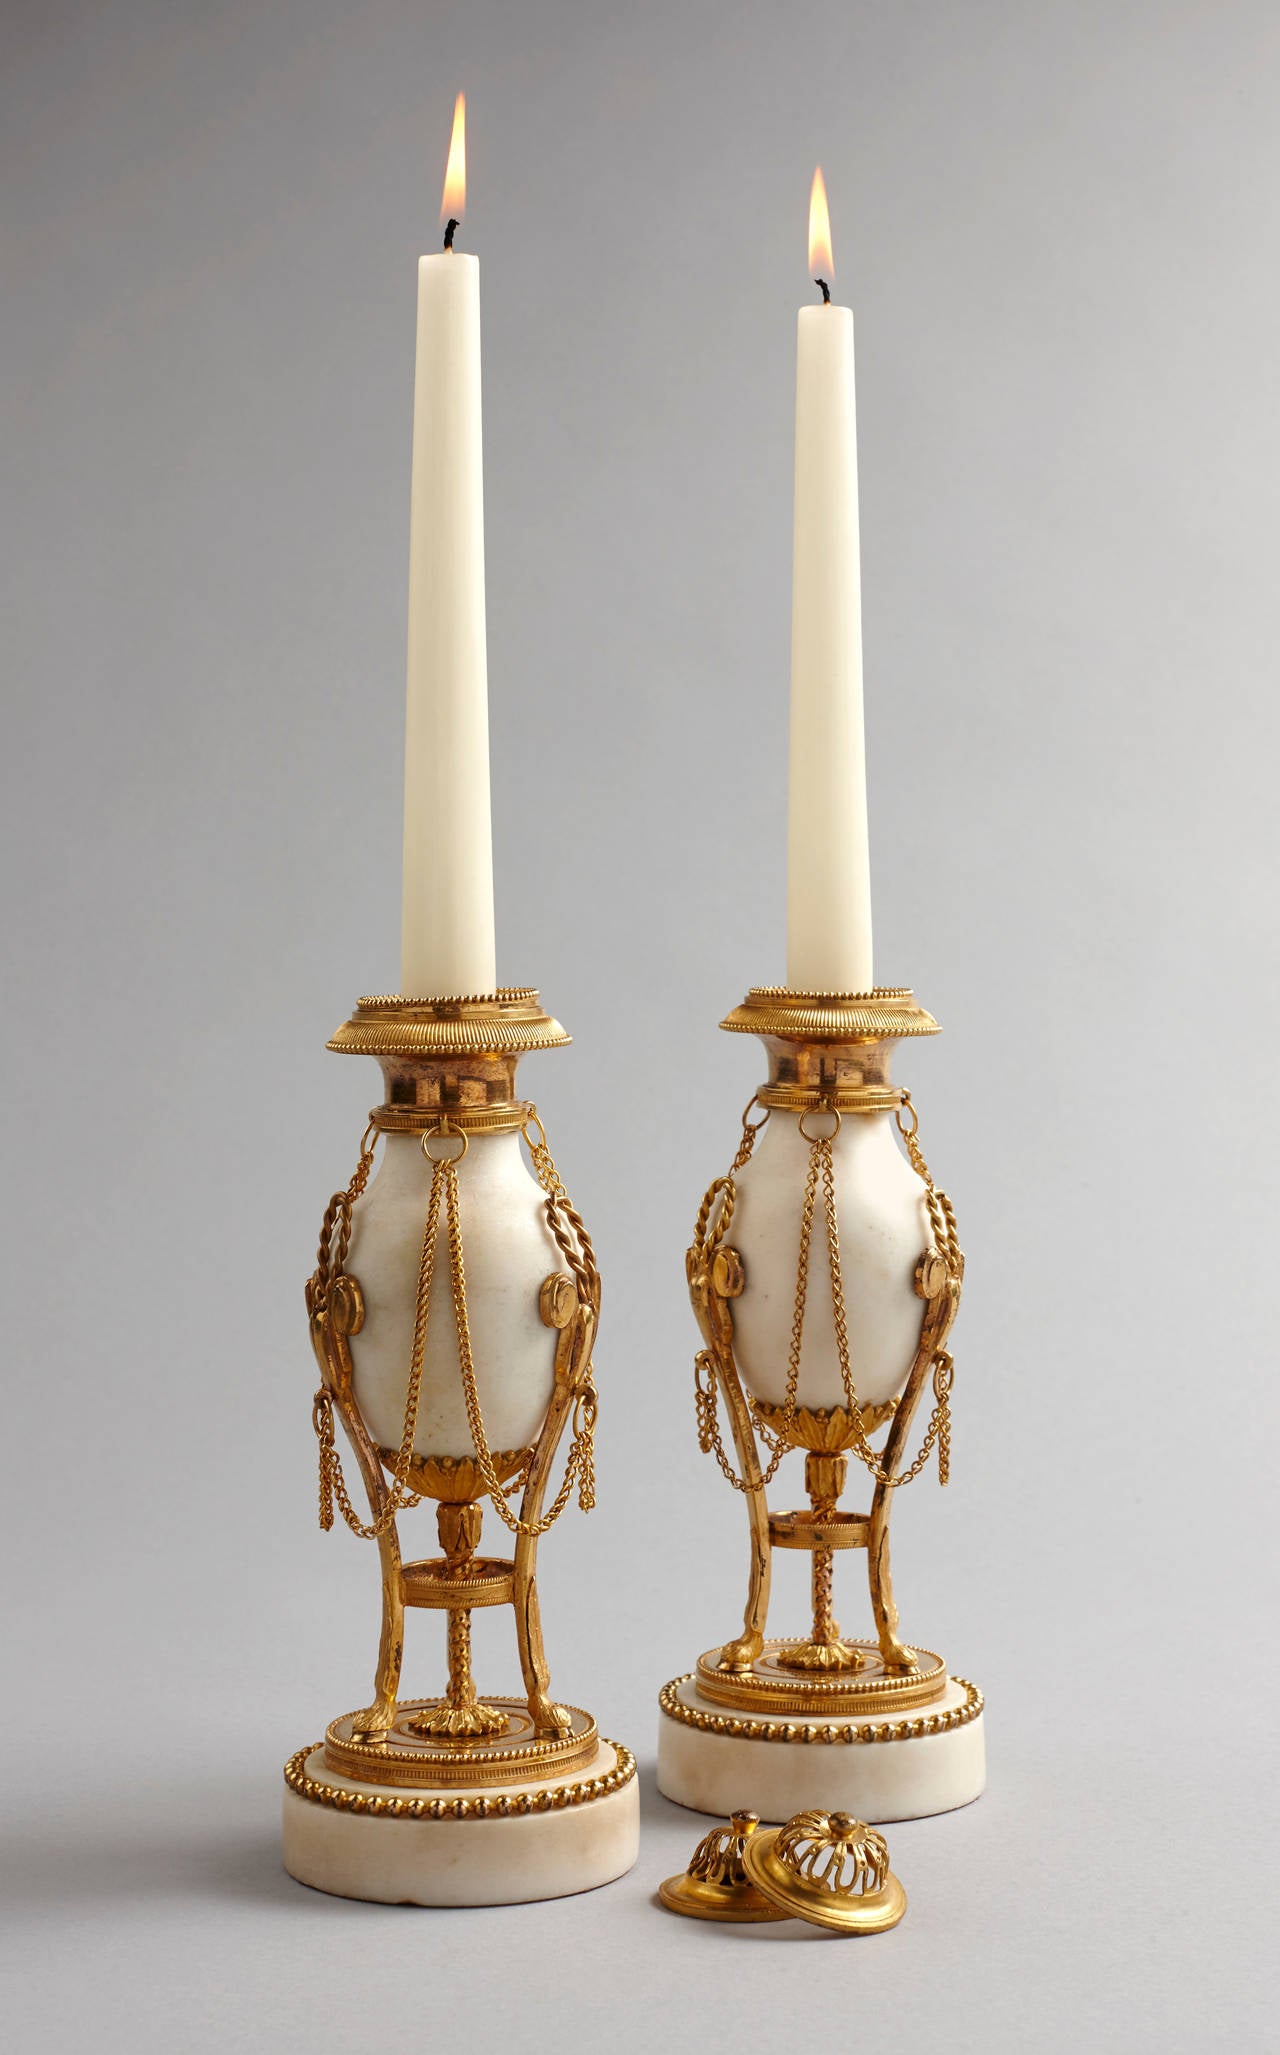 Ein schönes Paar Louis XVI weißem Marmor und vergoldeter Bronze cassolettes in Form von atheniennes. Jeweils mit gewölbtem und durchbrochenem Deckel, der den Blick auf den Kerzenhalter freigibt. Der eiförmige Korpus aus weißem Marmor ist mit